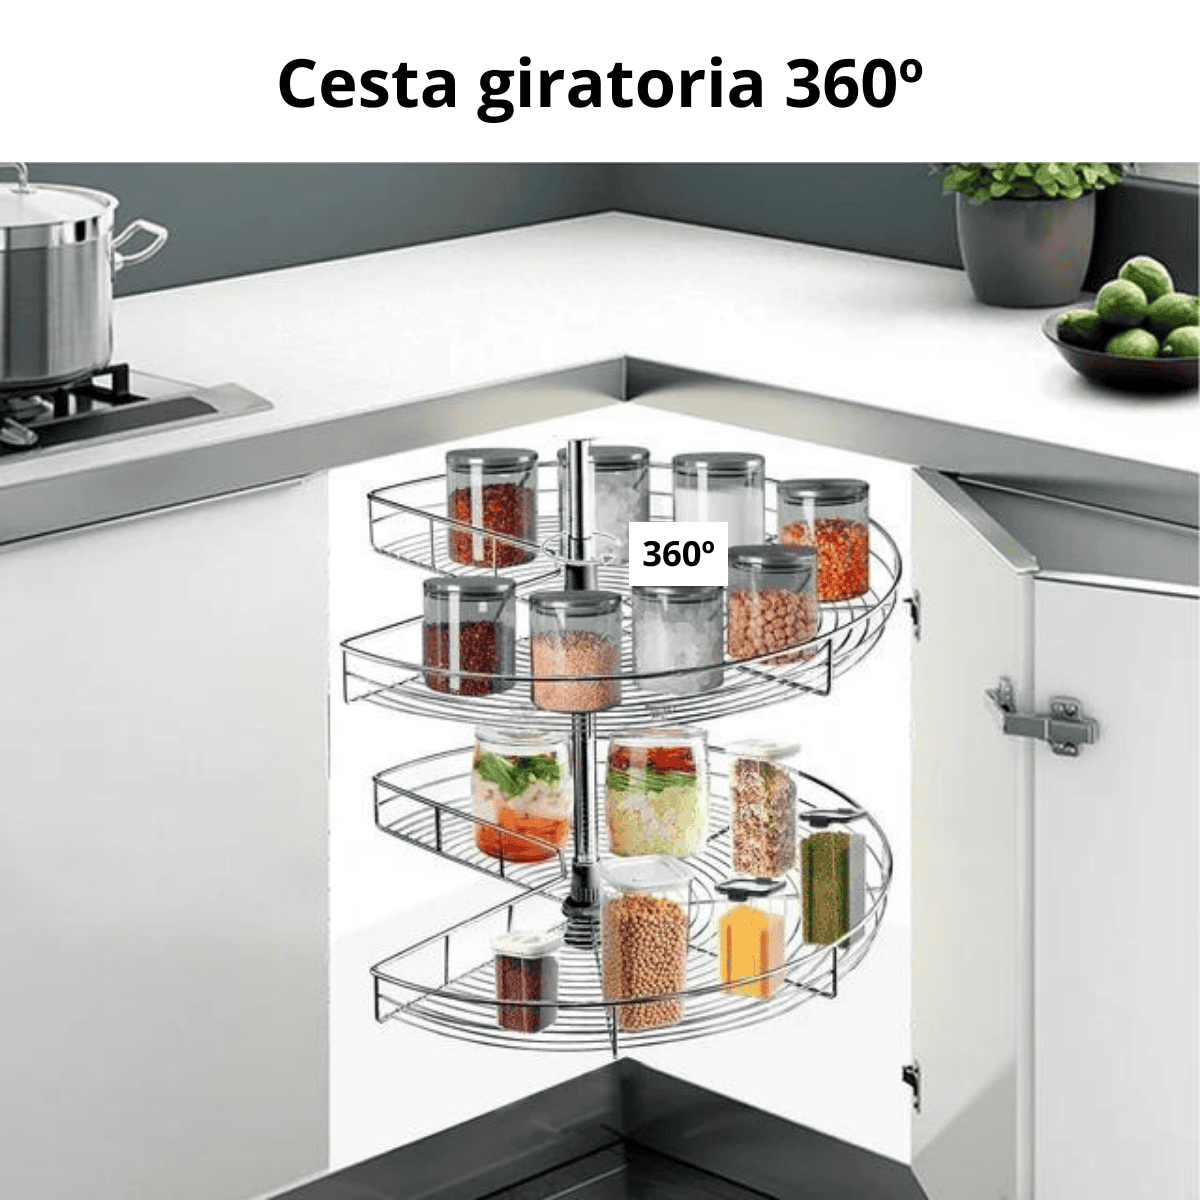 Cesto giratorio para cocina 360º